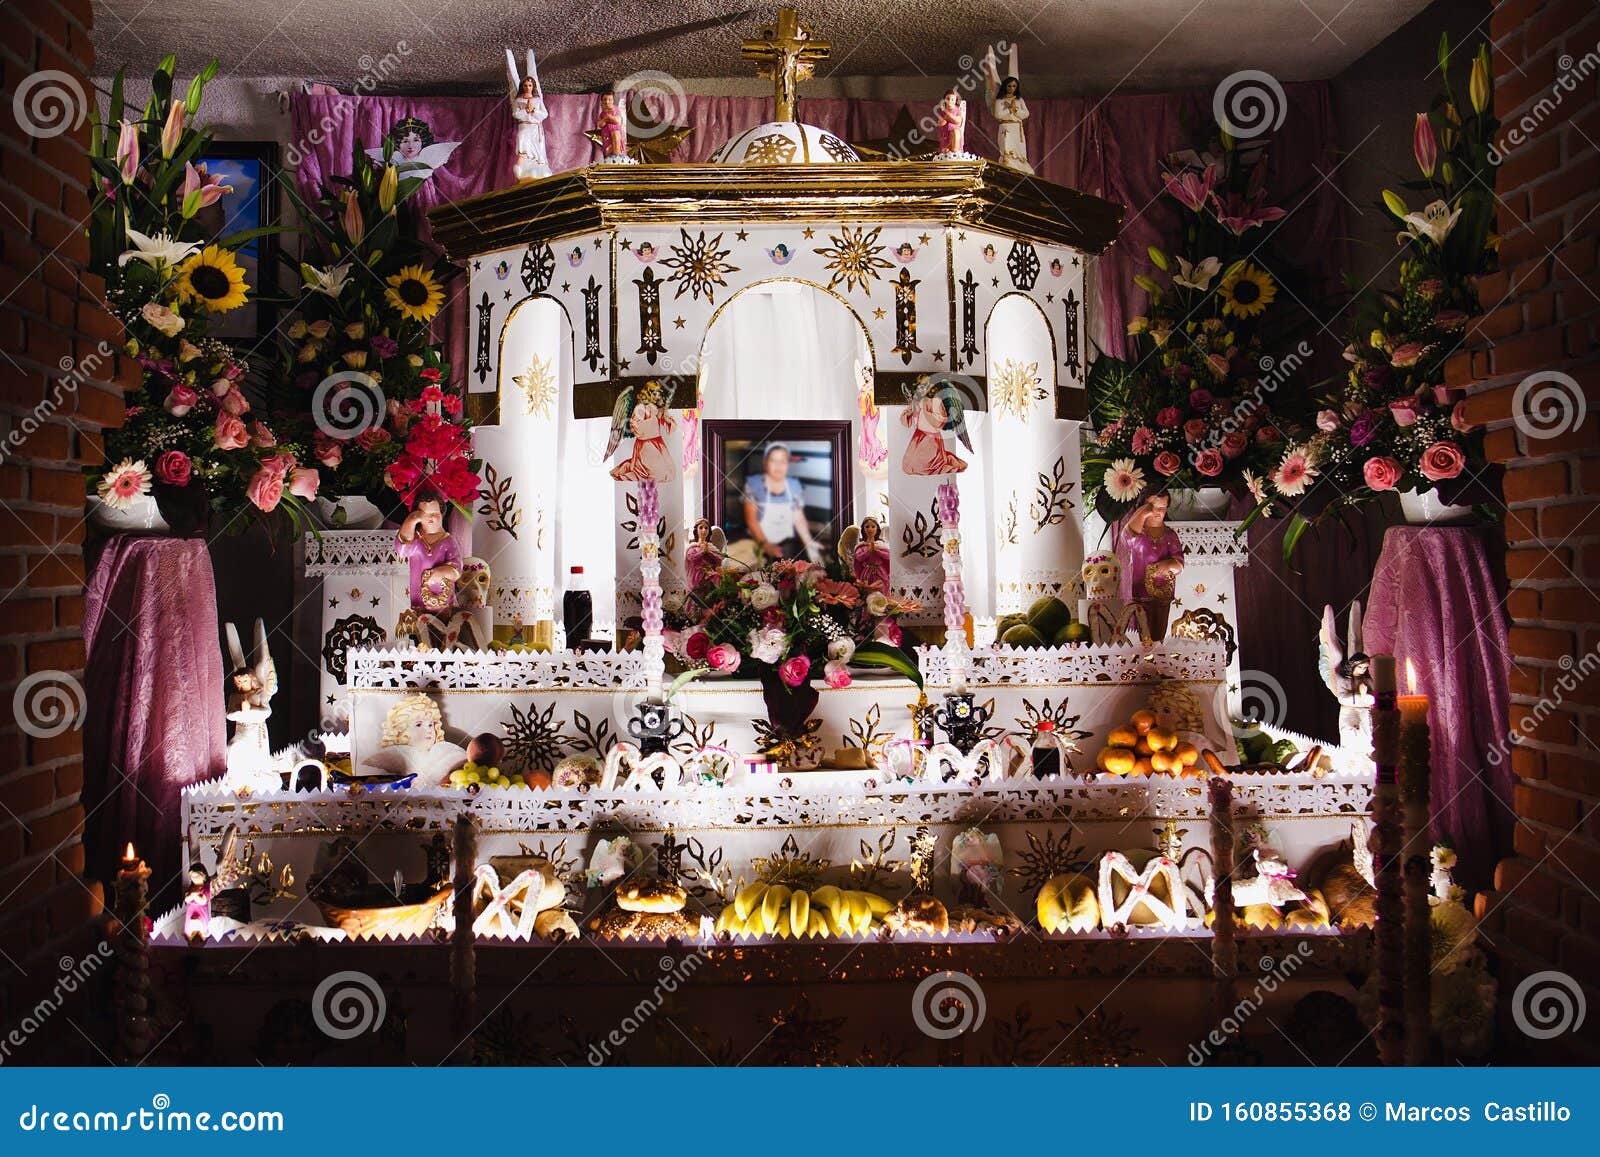 mexican offering for dia de los muertos in huaquechula puebla mexico